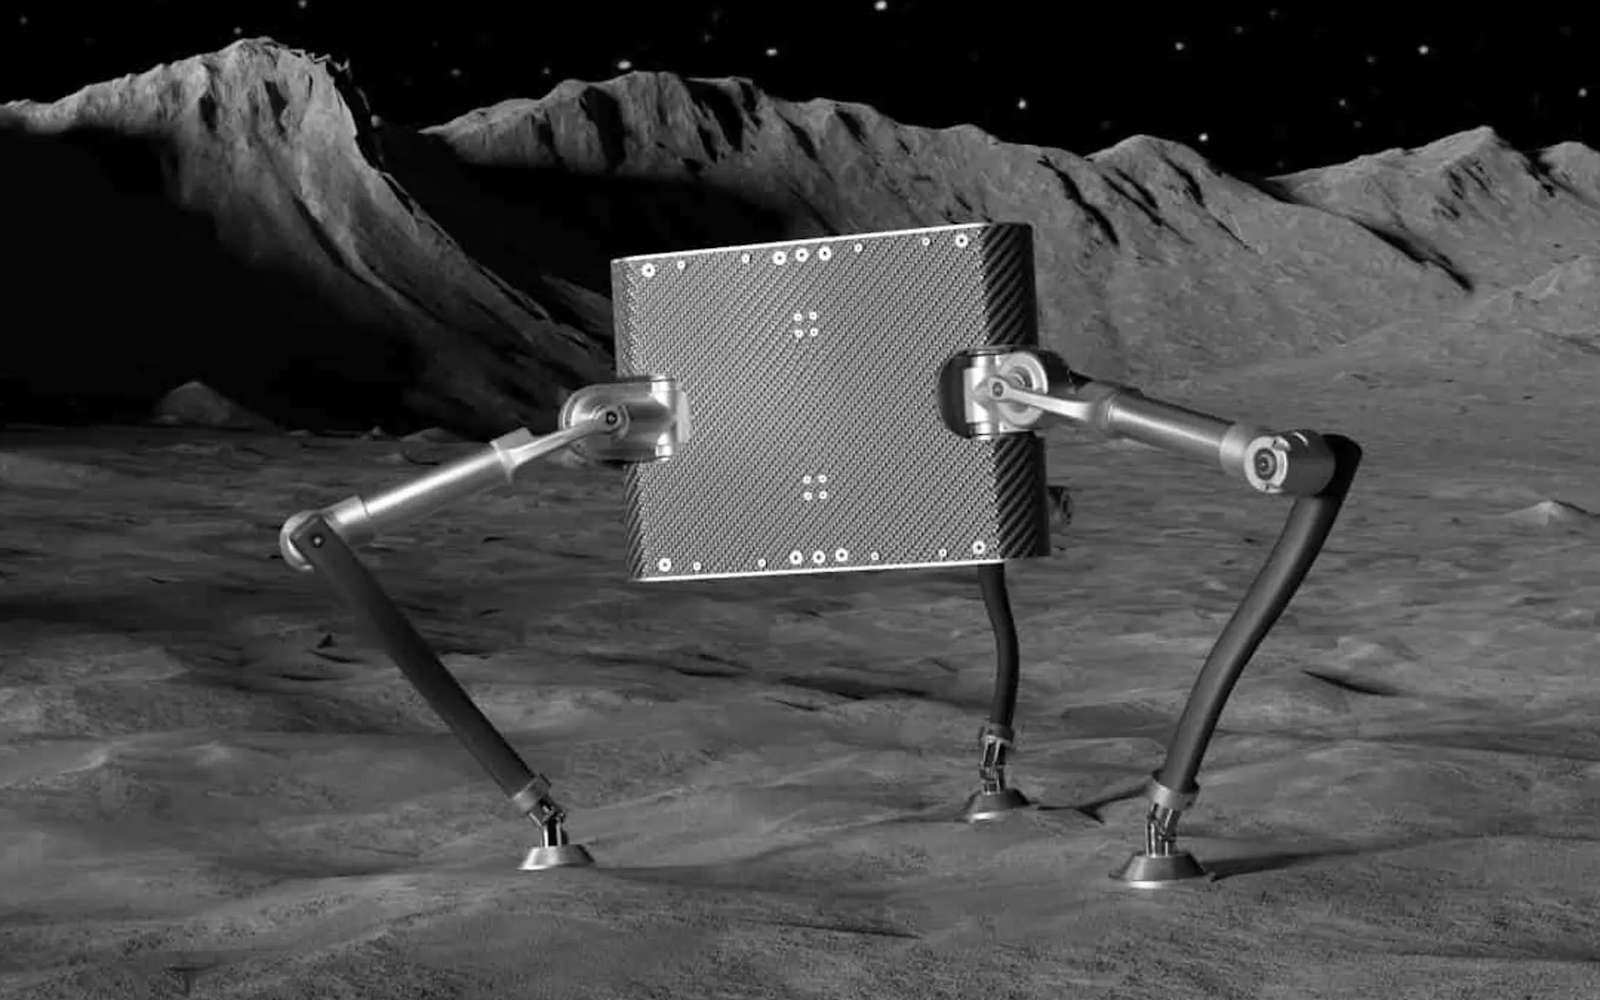 Ce petit robot sauteur pourrait explorer les astéroïdes